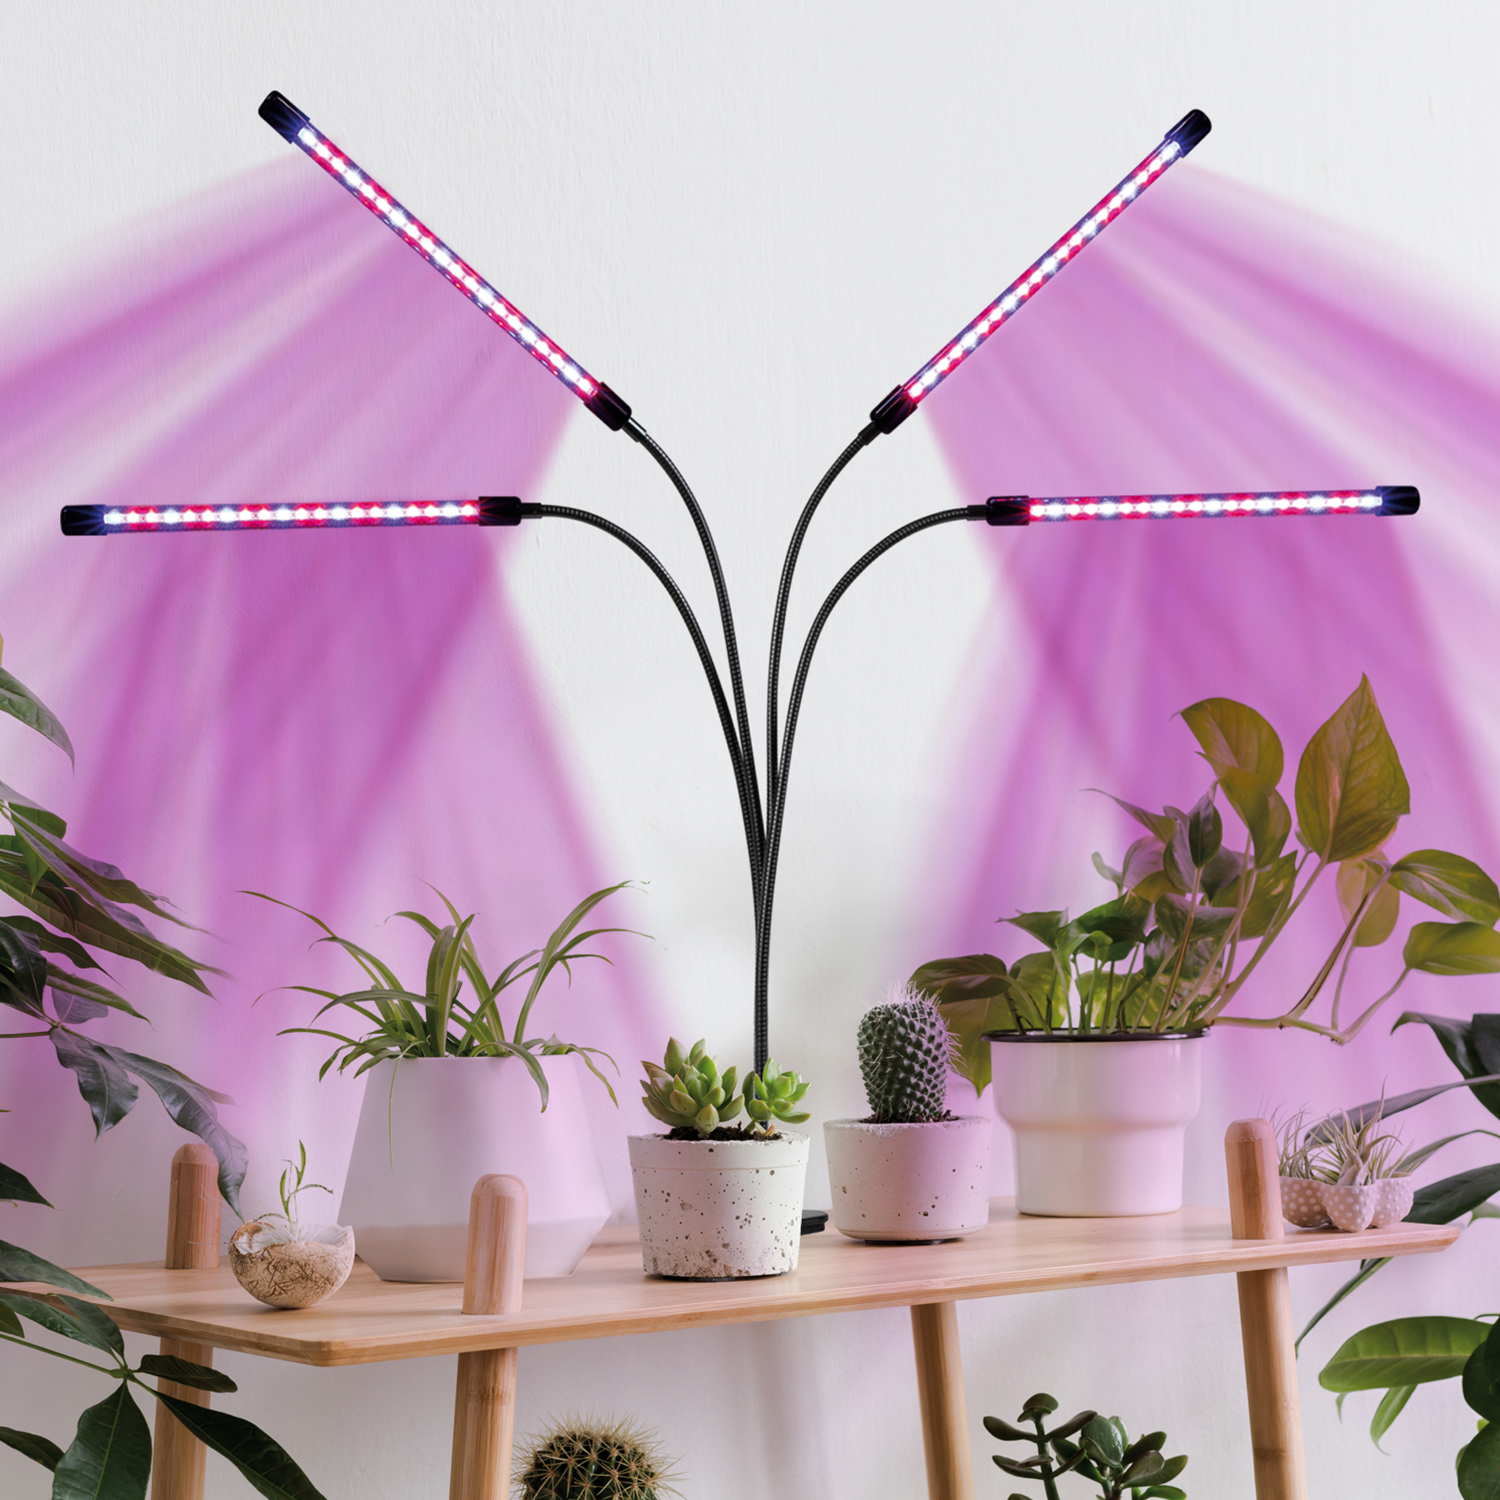 Lampe de croissance pour plantes d'intérieur, lampe de croissance à spectre  complet avec lumières LED IR et UV pour plantes d'intérieur, micro verts